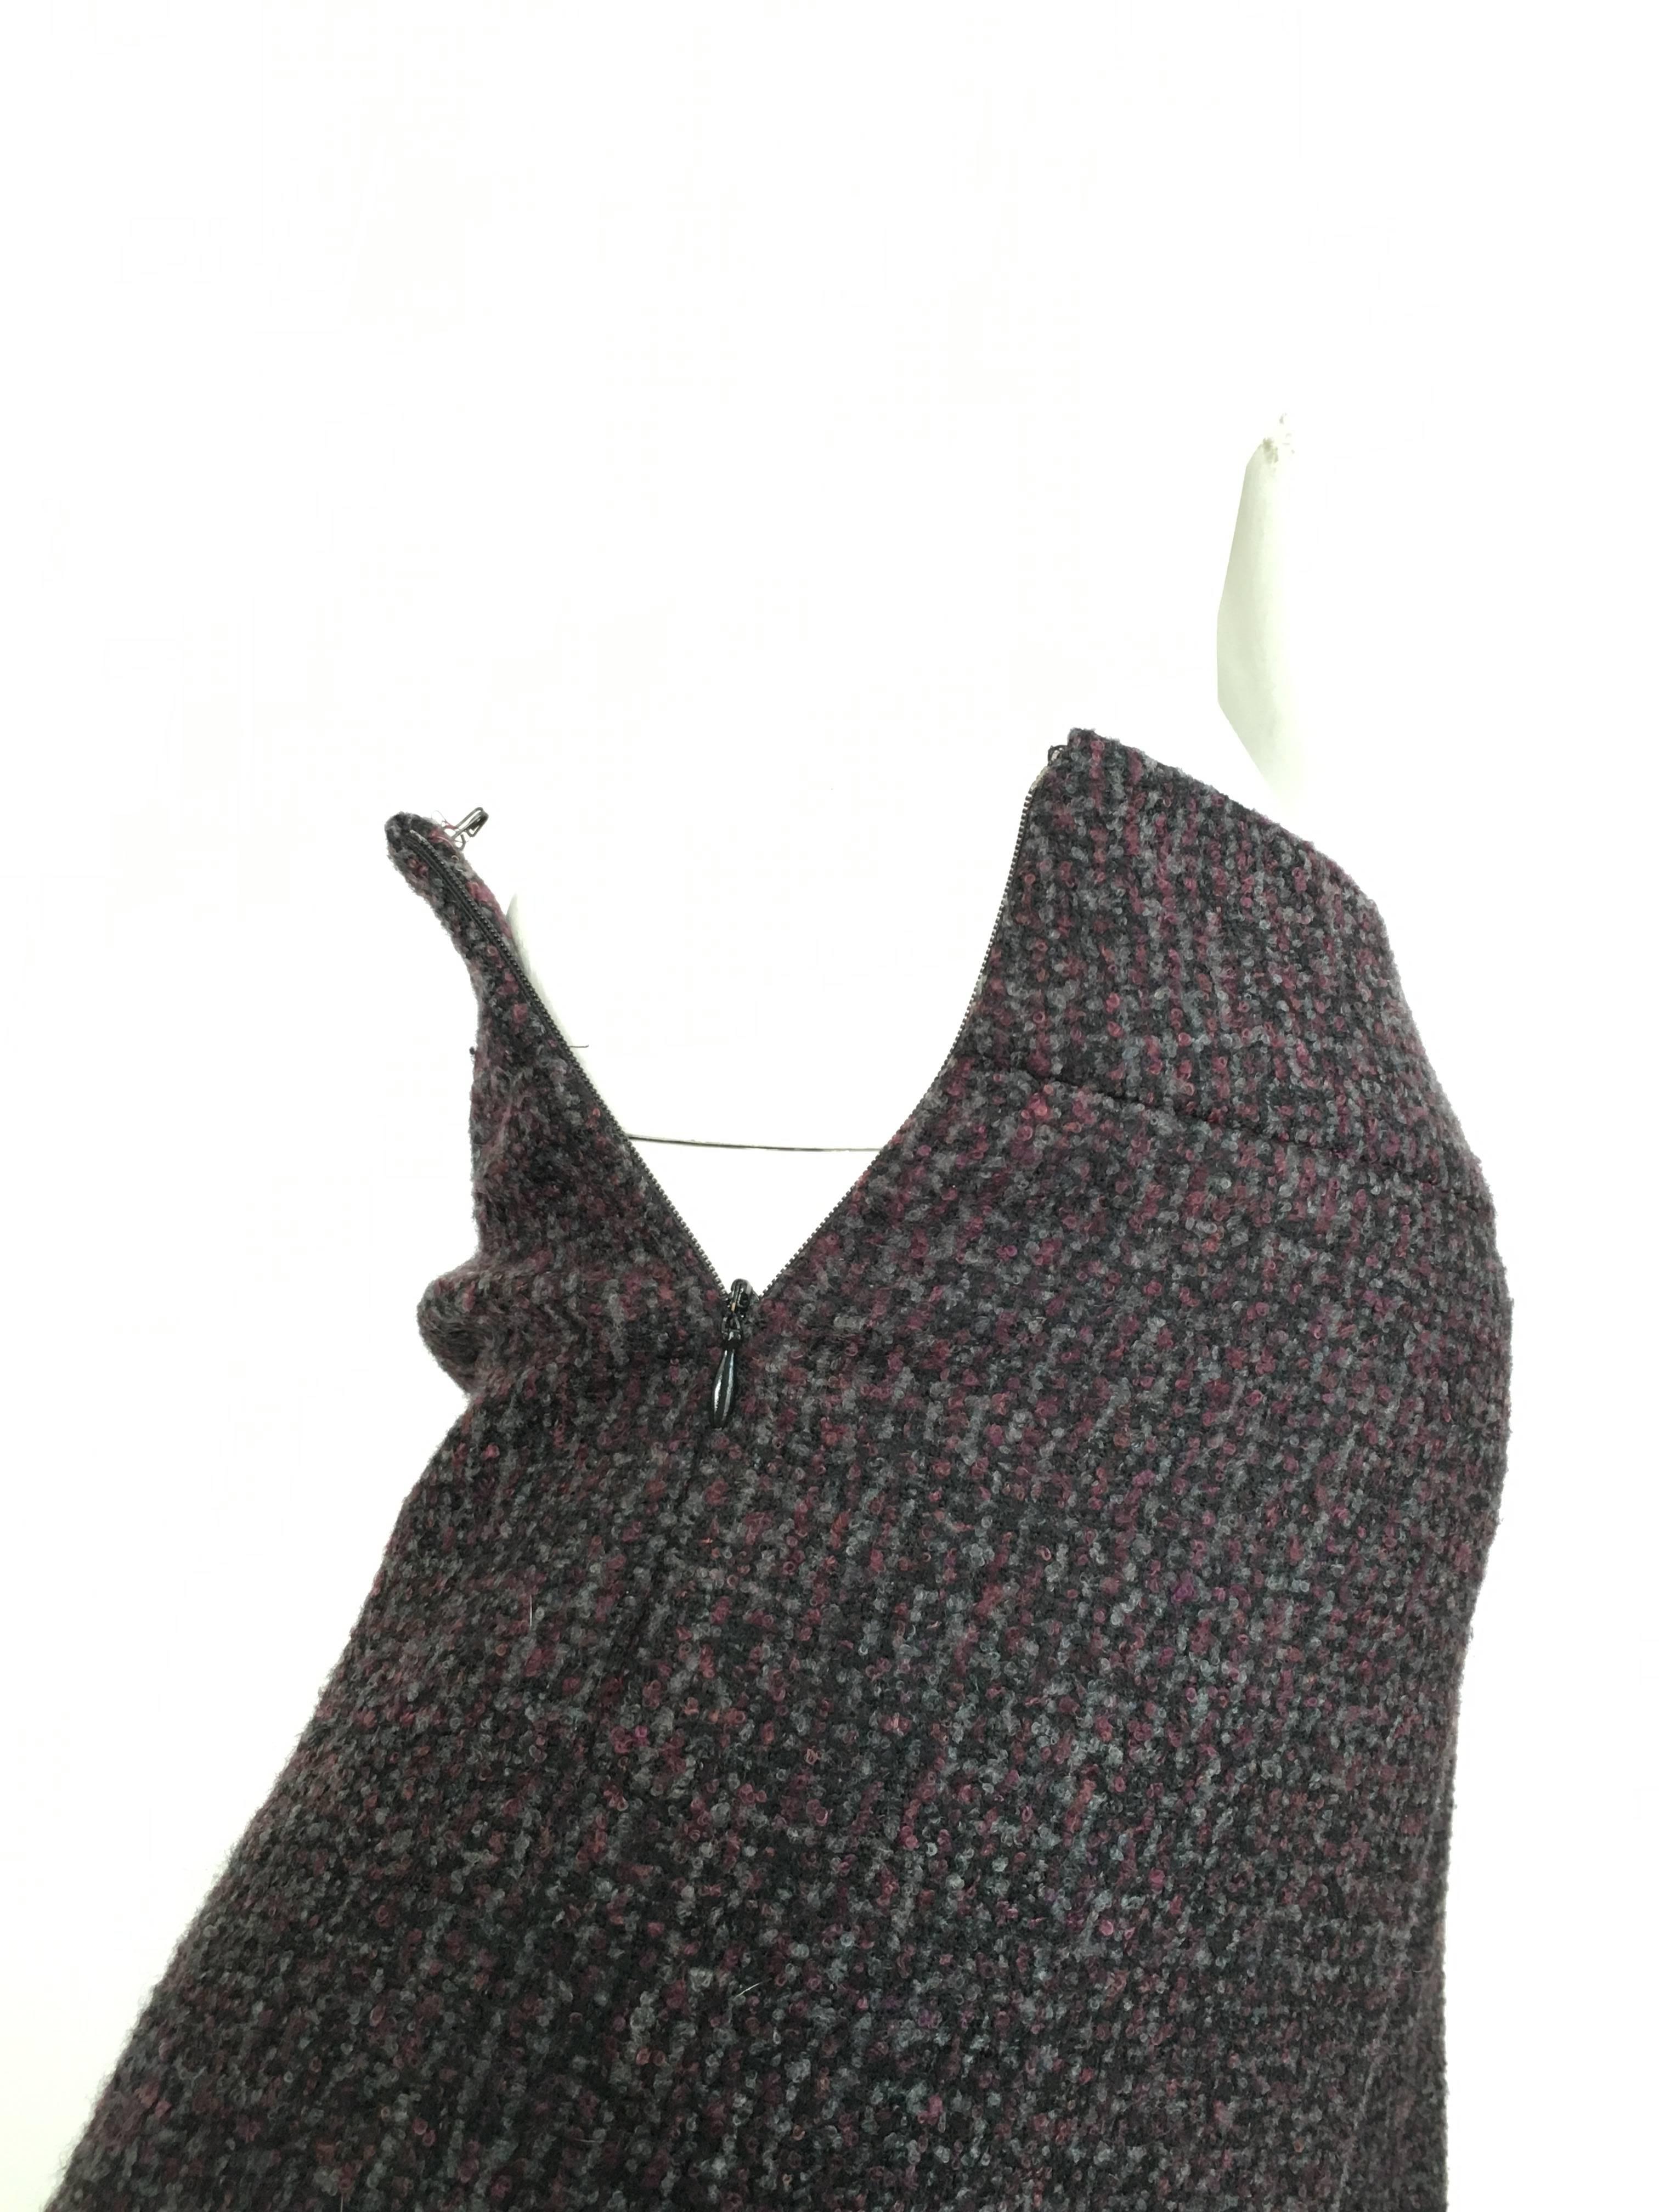 Oscar de la Renta Nubby Flannel Wool Pants Size 6. Made in Italy. For Sale 3